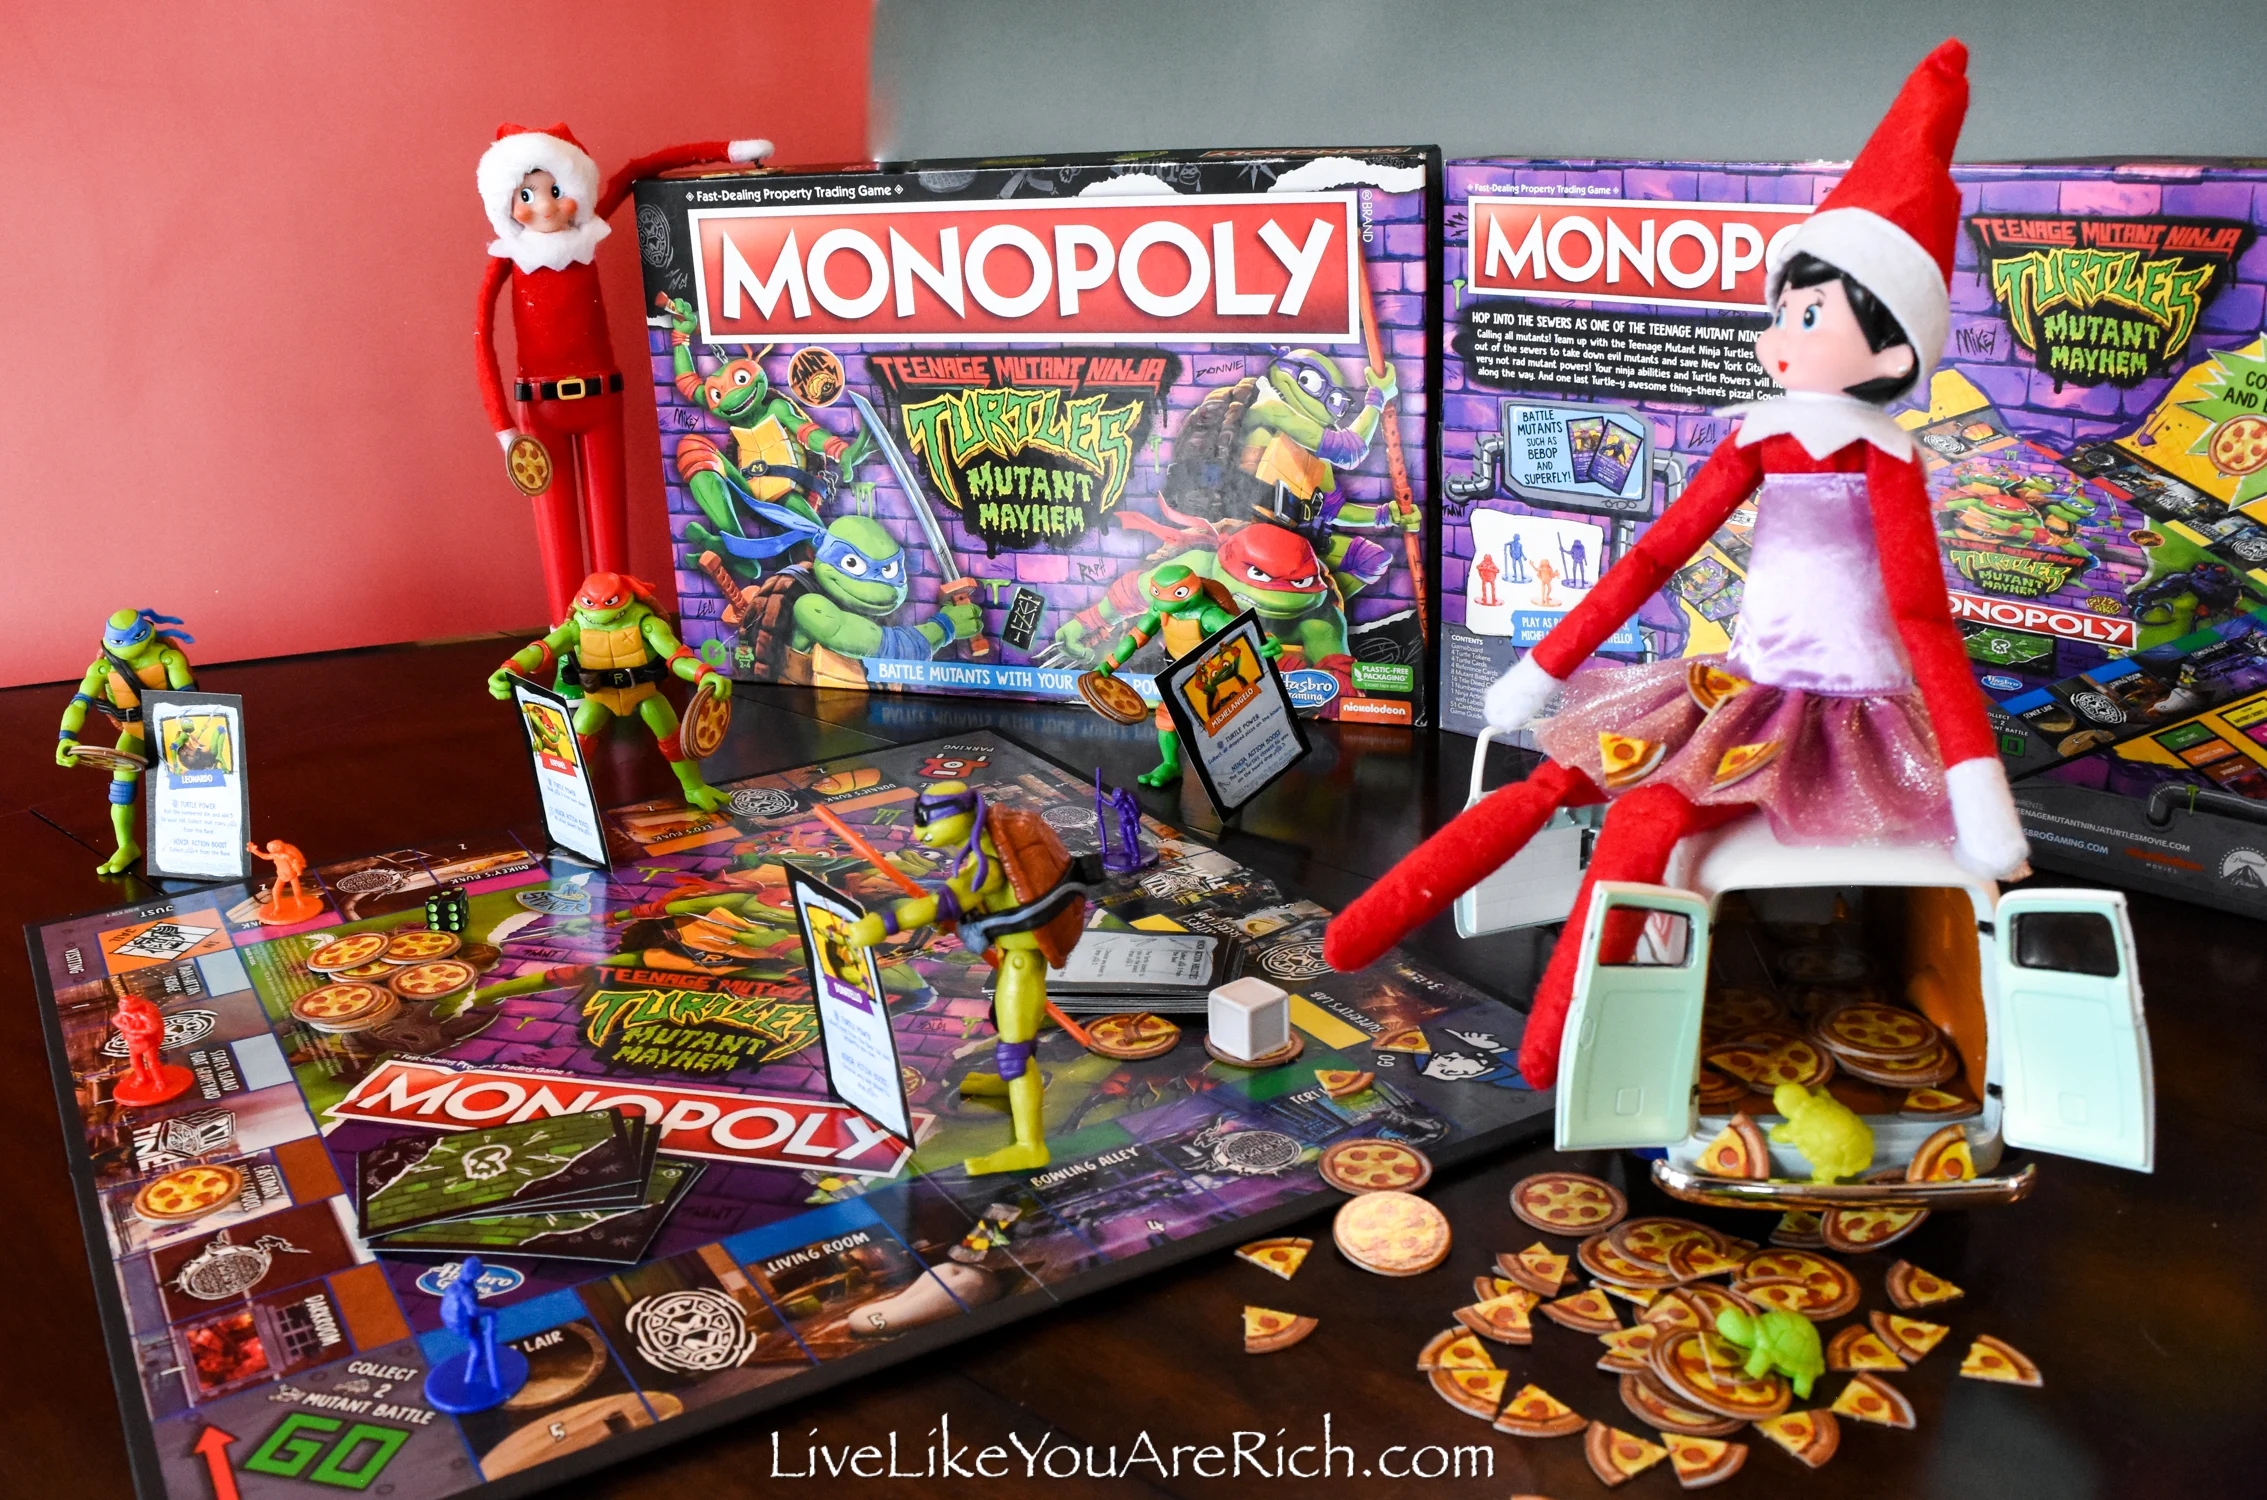 Elf on the Shelf: Teenage Mutant Ninja Turtles Monopoly